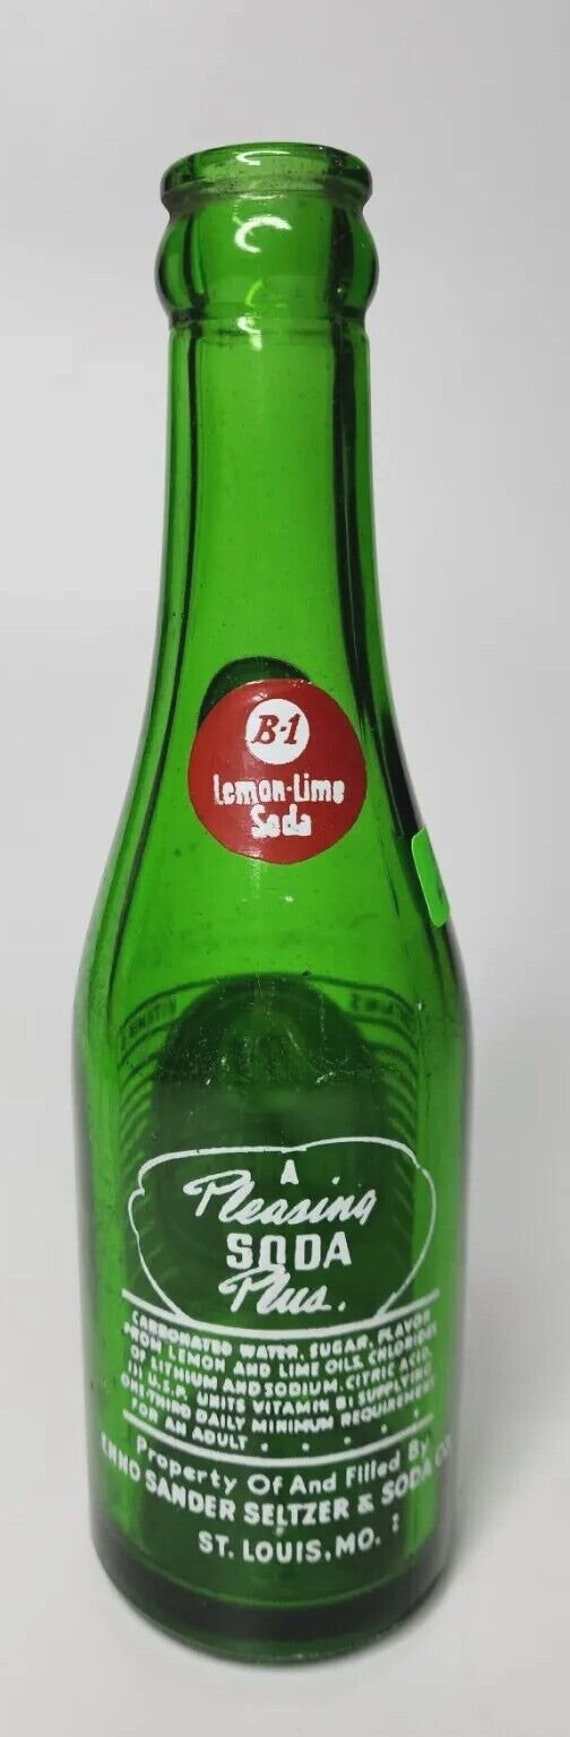 Vtg 1960's pop acl soda bottle 7oz b-1 lemon lime… - image 6